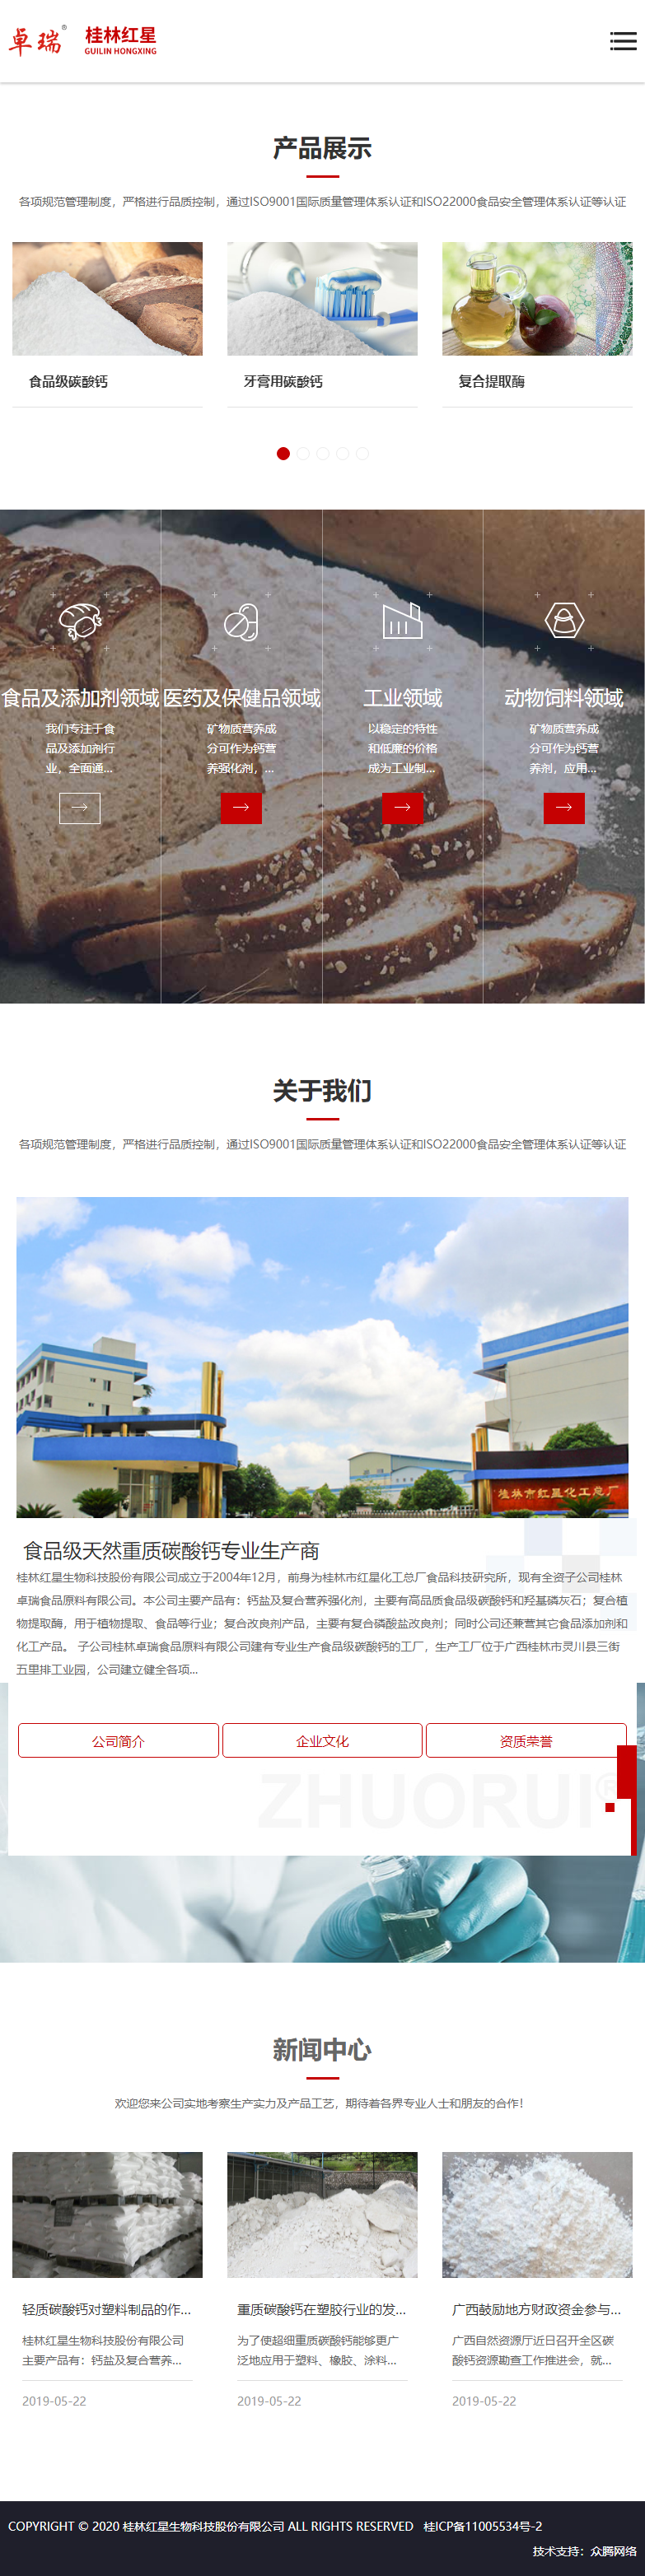 桂林红星生物科技股份有限公司网站案例